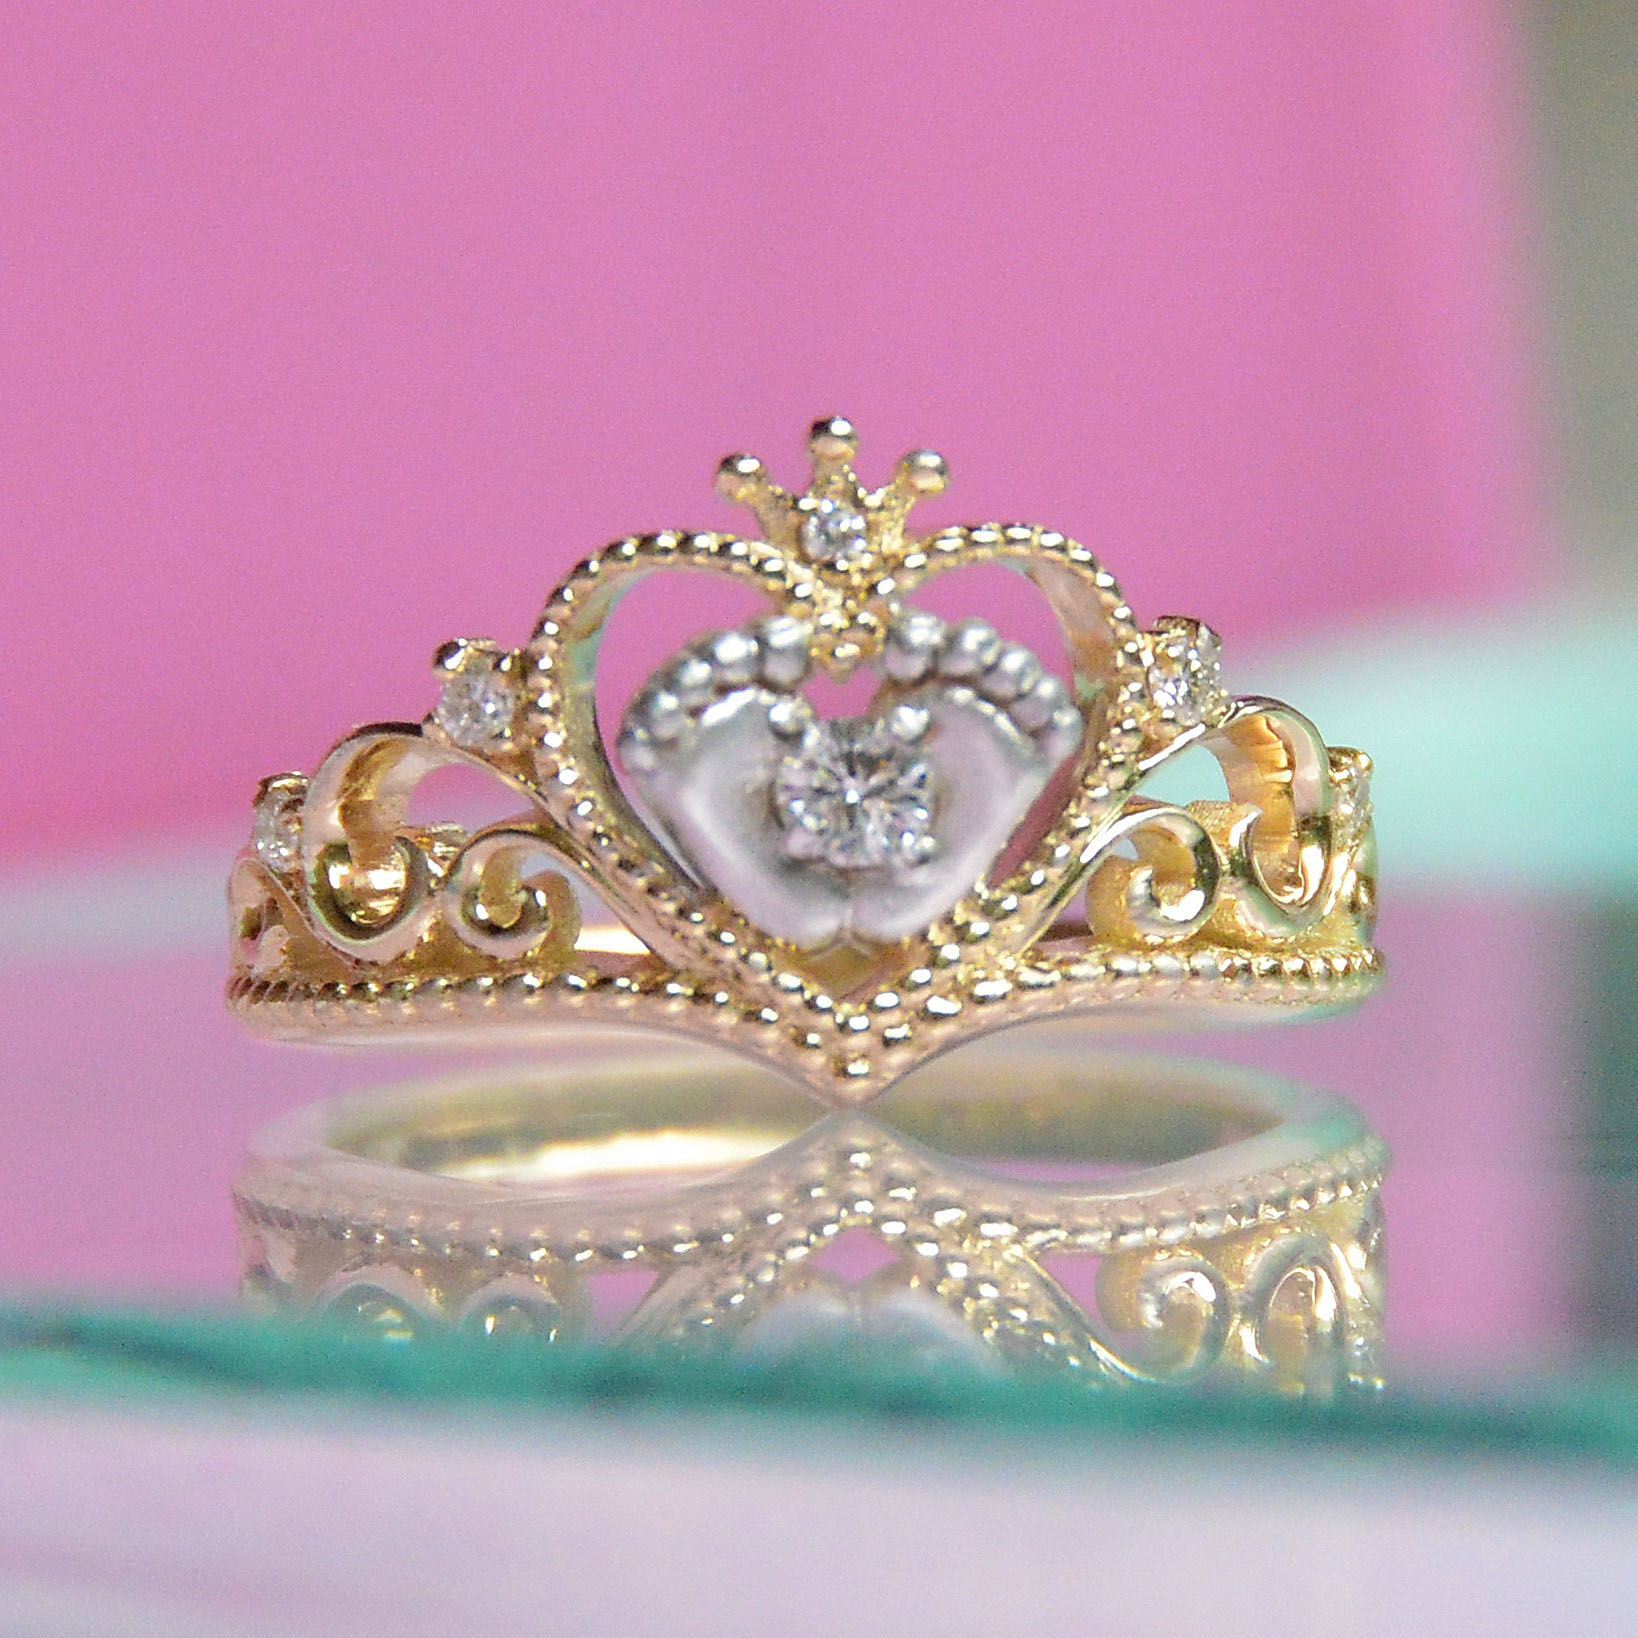 Двухцветное кольцо на рождение сына или дочки с ножками, сердцем и короной (Вес: 4,4 гр.)